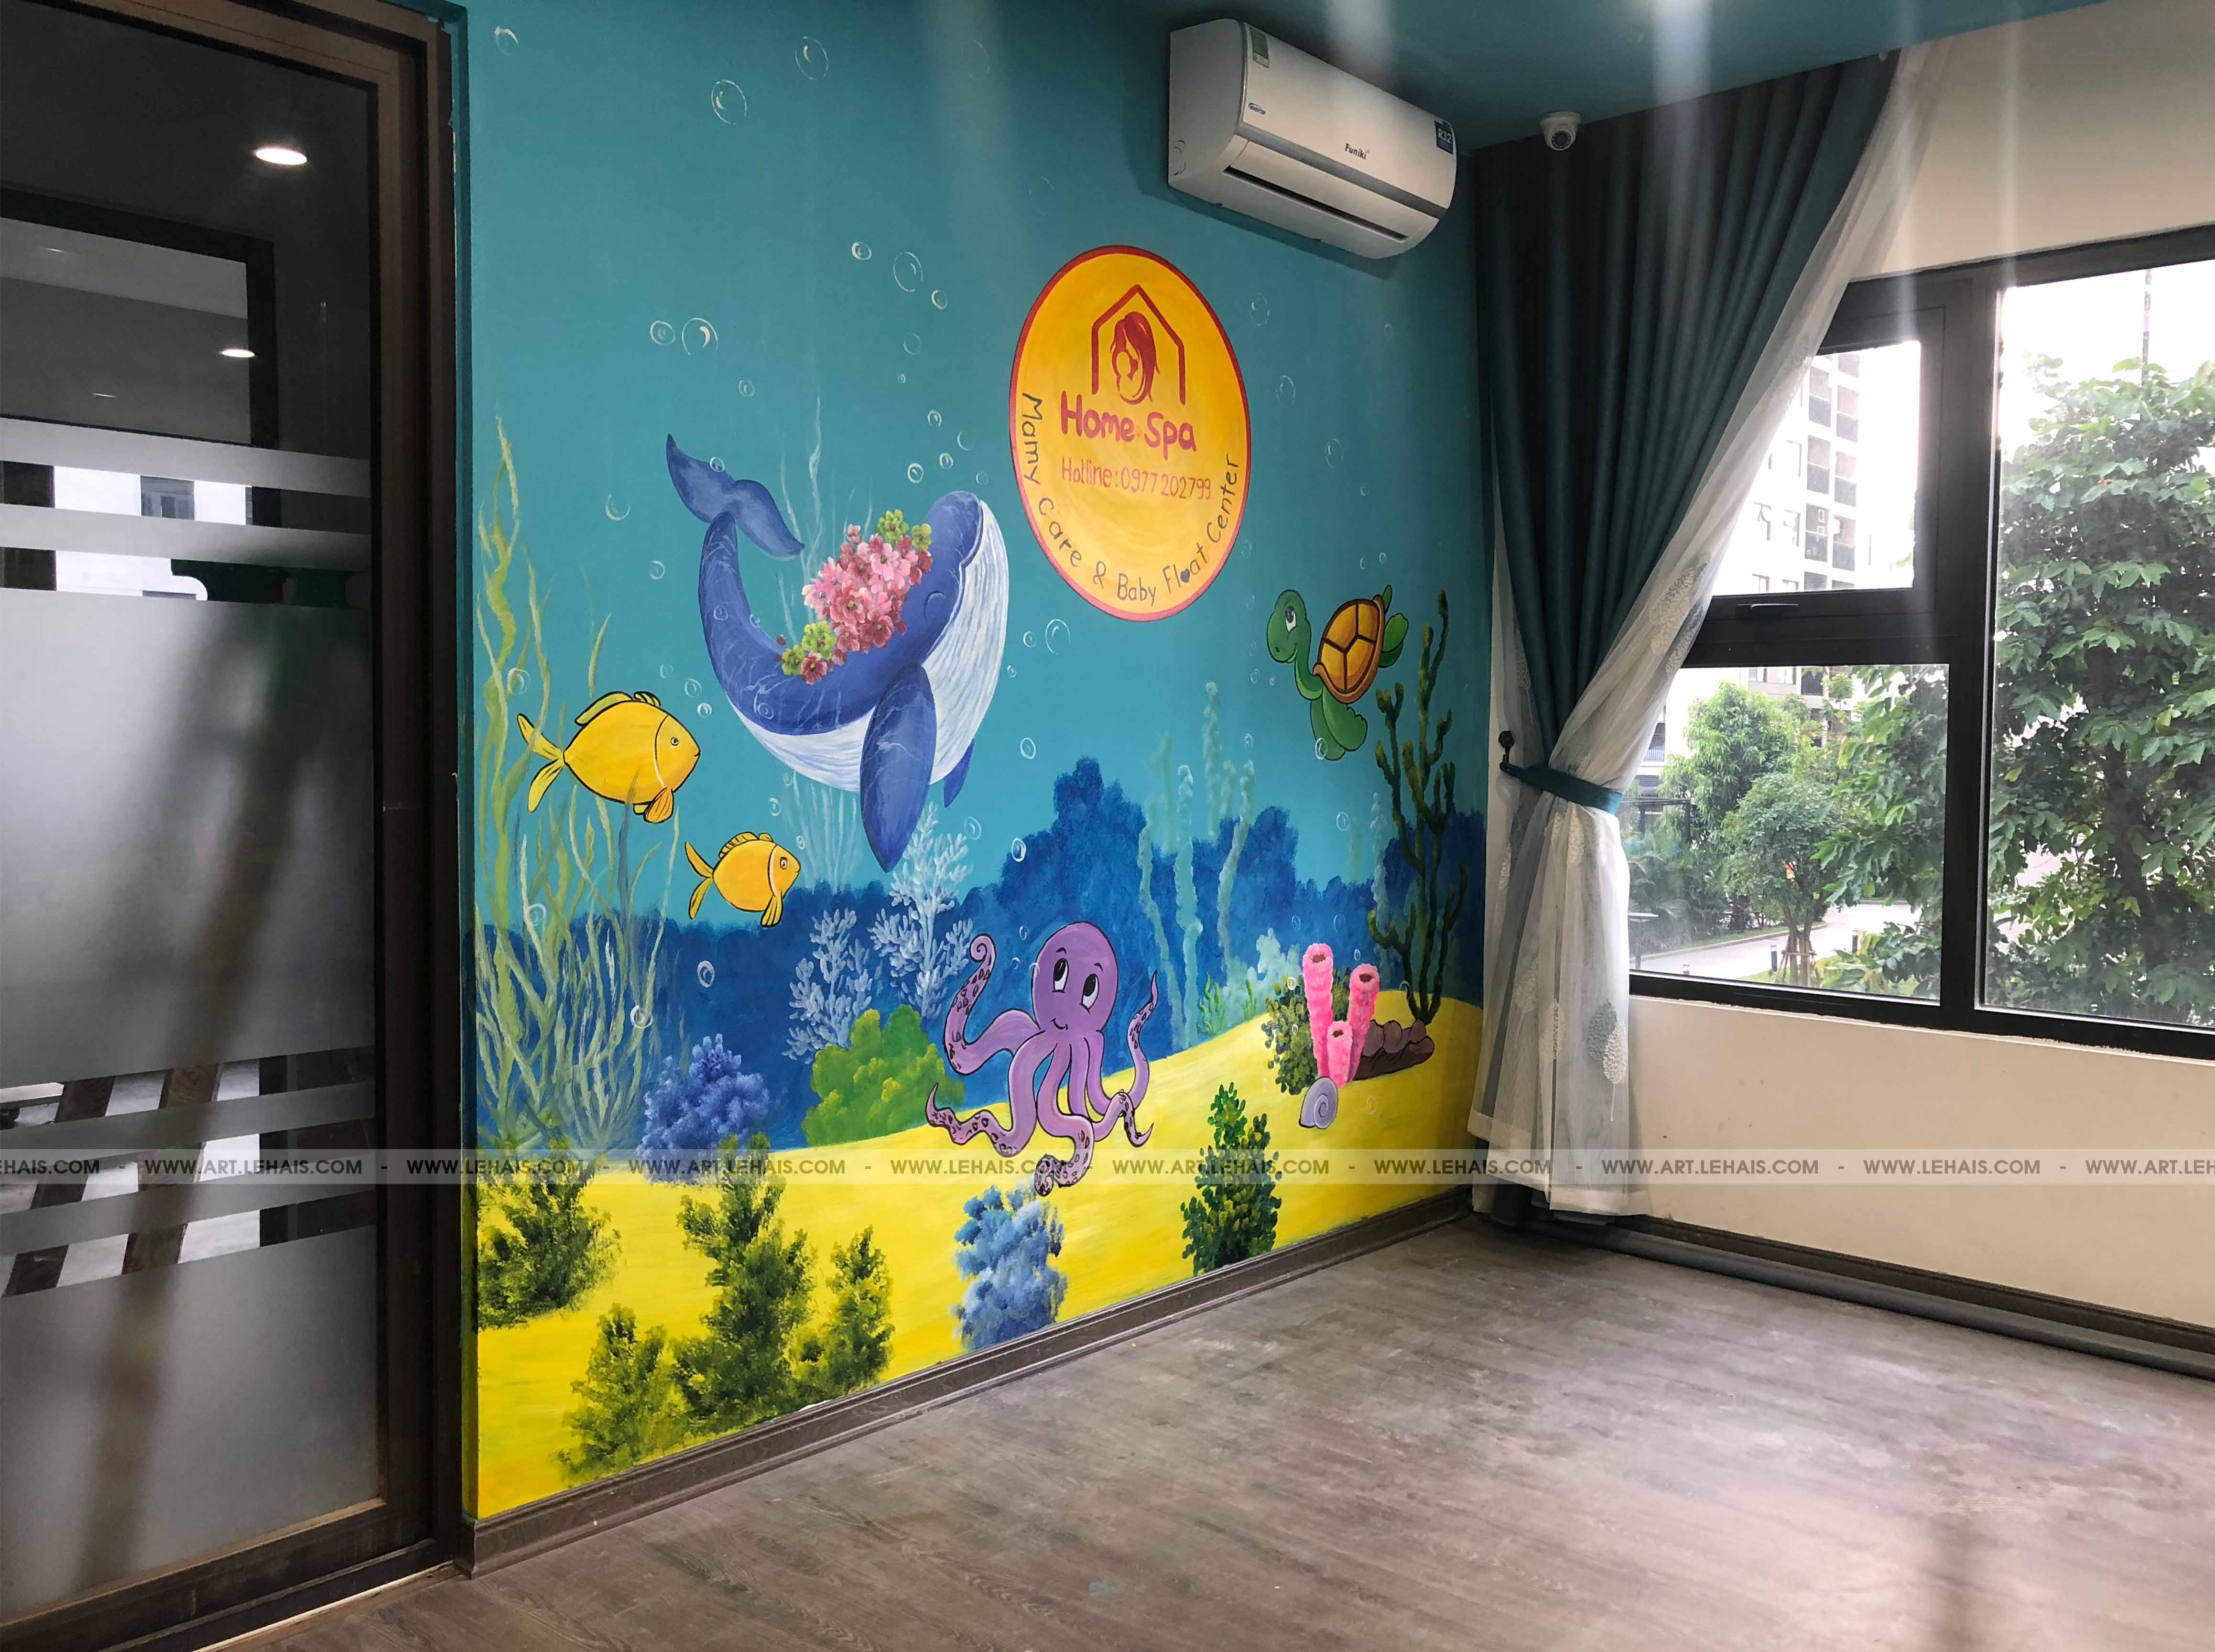 Vẽ tranh 3D trang trí tường tại Home Spa ở Vinhomes Smart City Tây Mỗ, Từ Liêm, Hà Nội - TT189LHAR